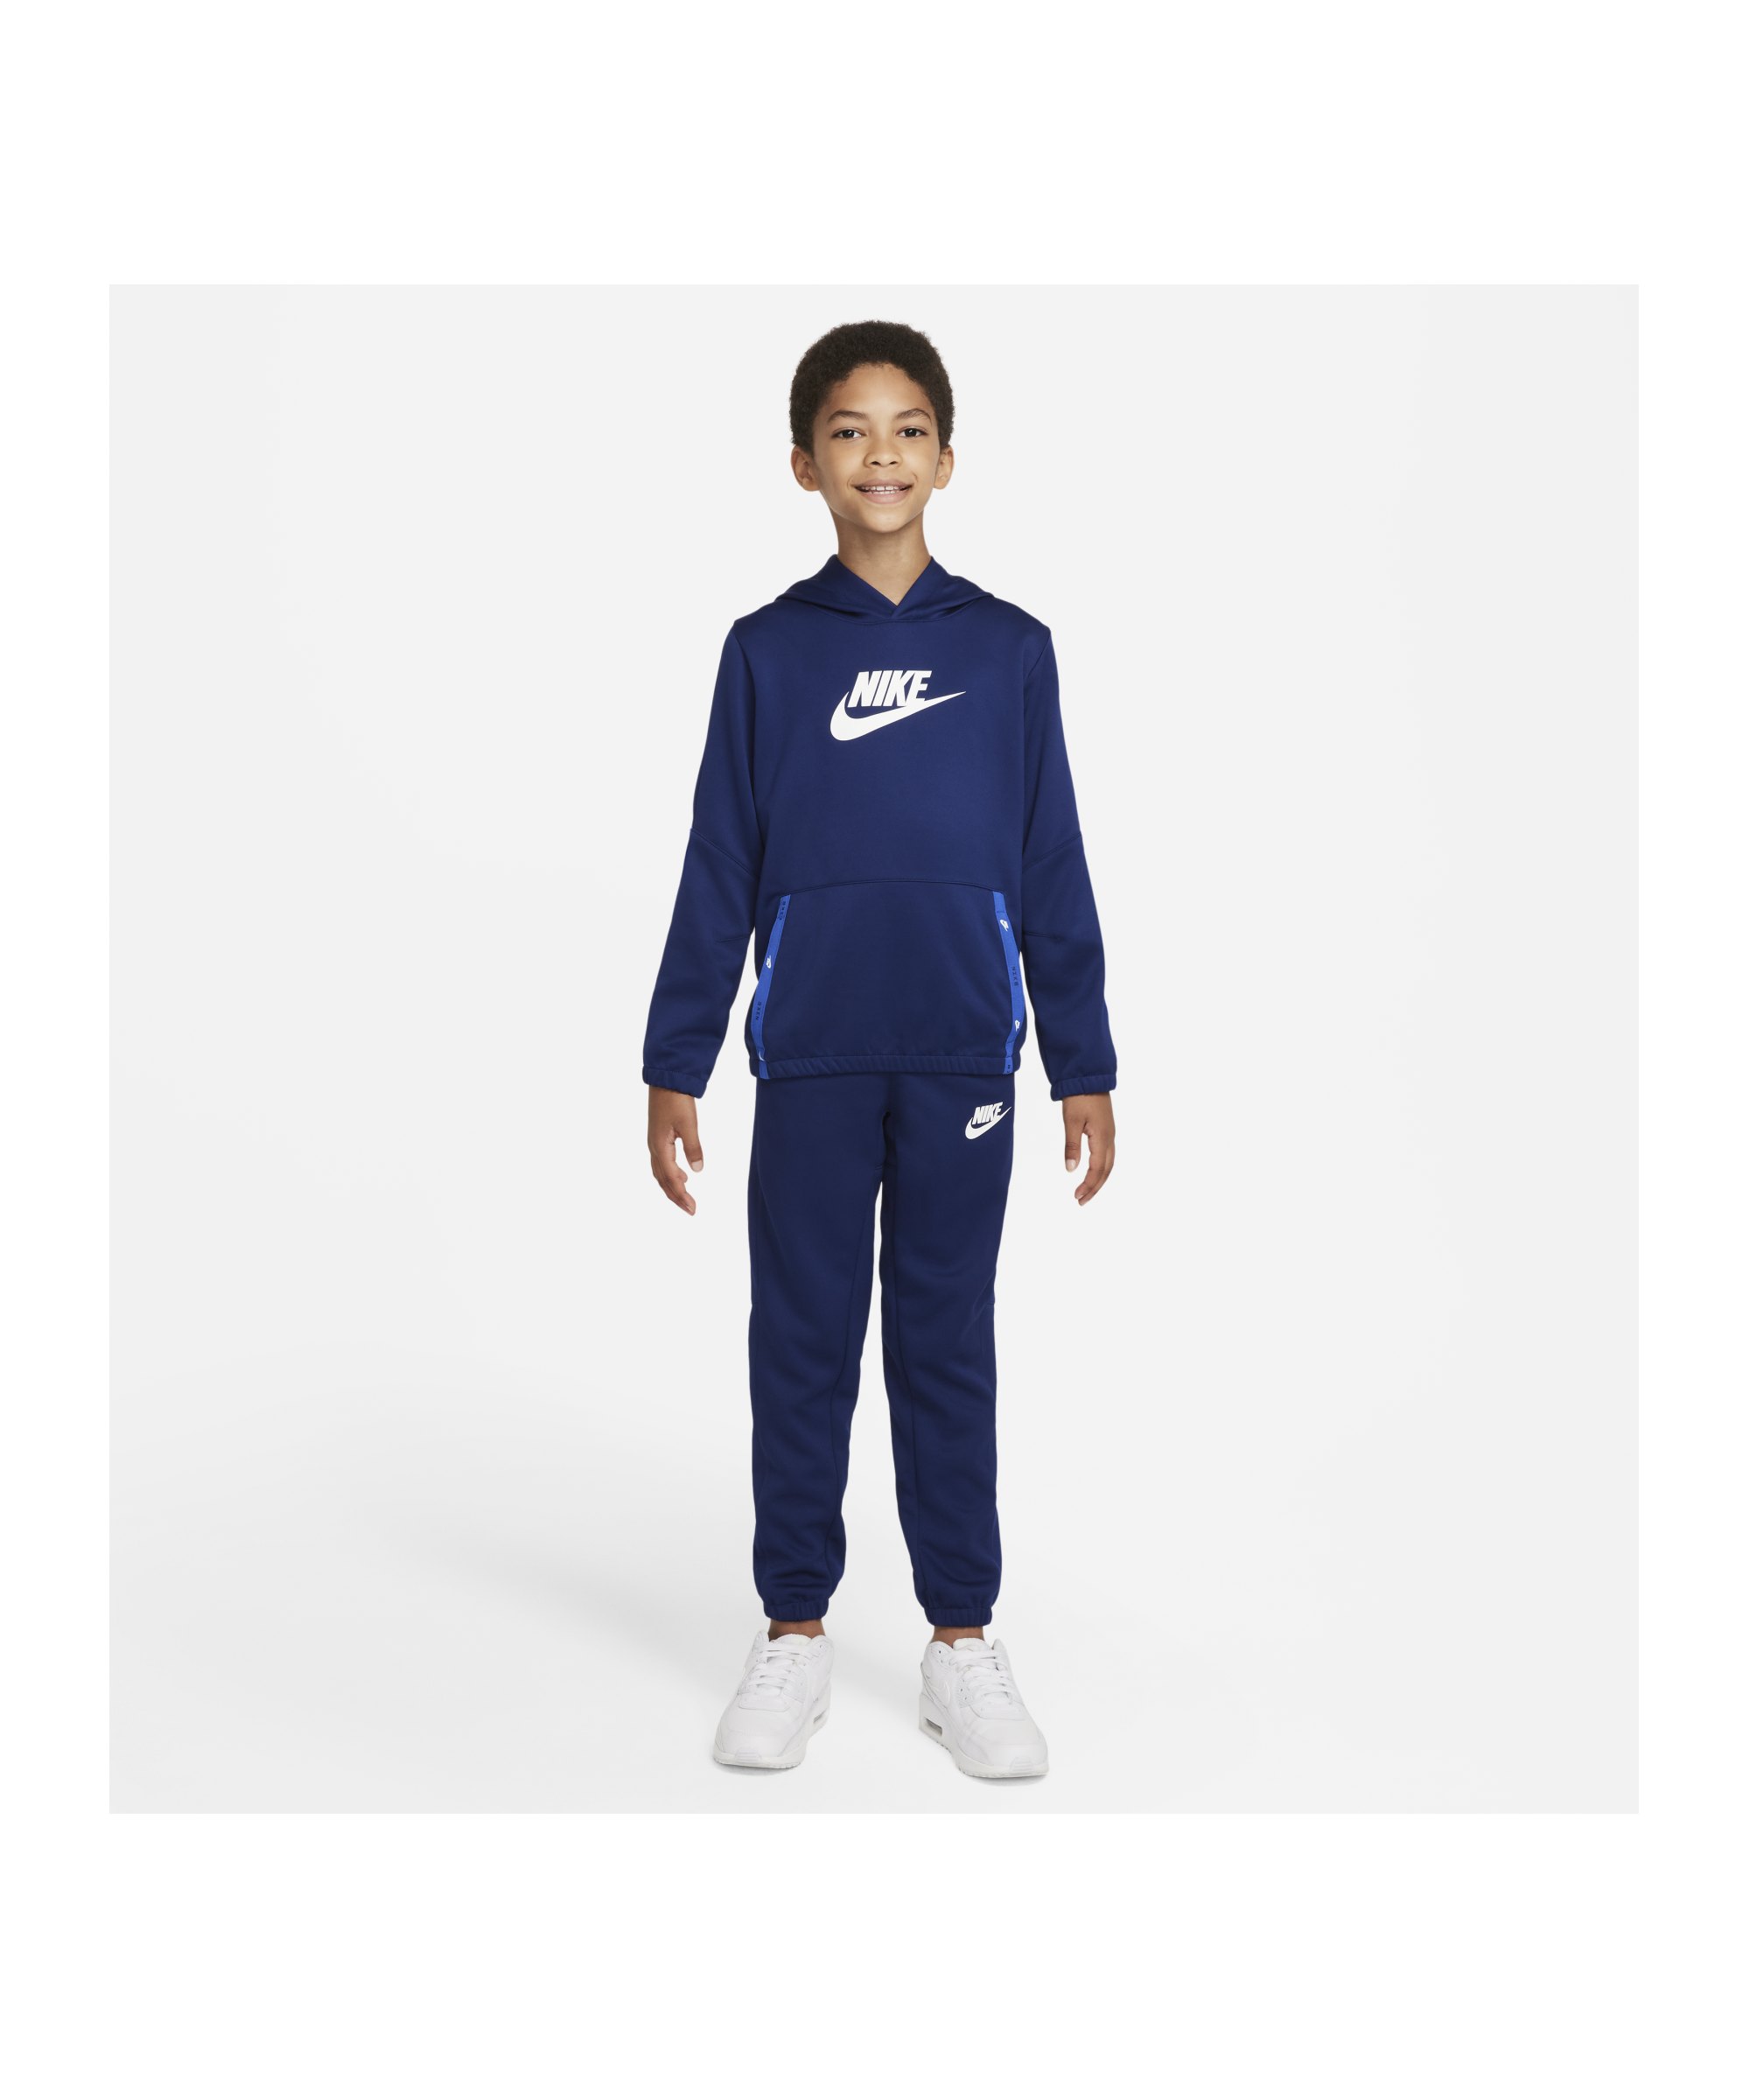 Nike Freizeitanzug Kids Blau Weiss F492 - blau